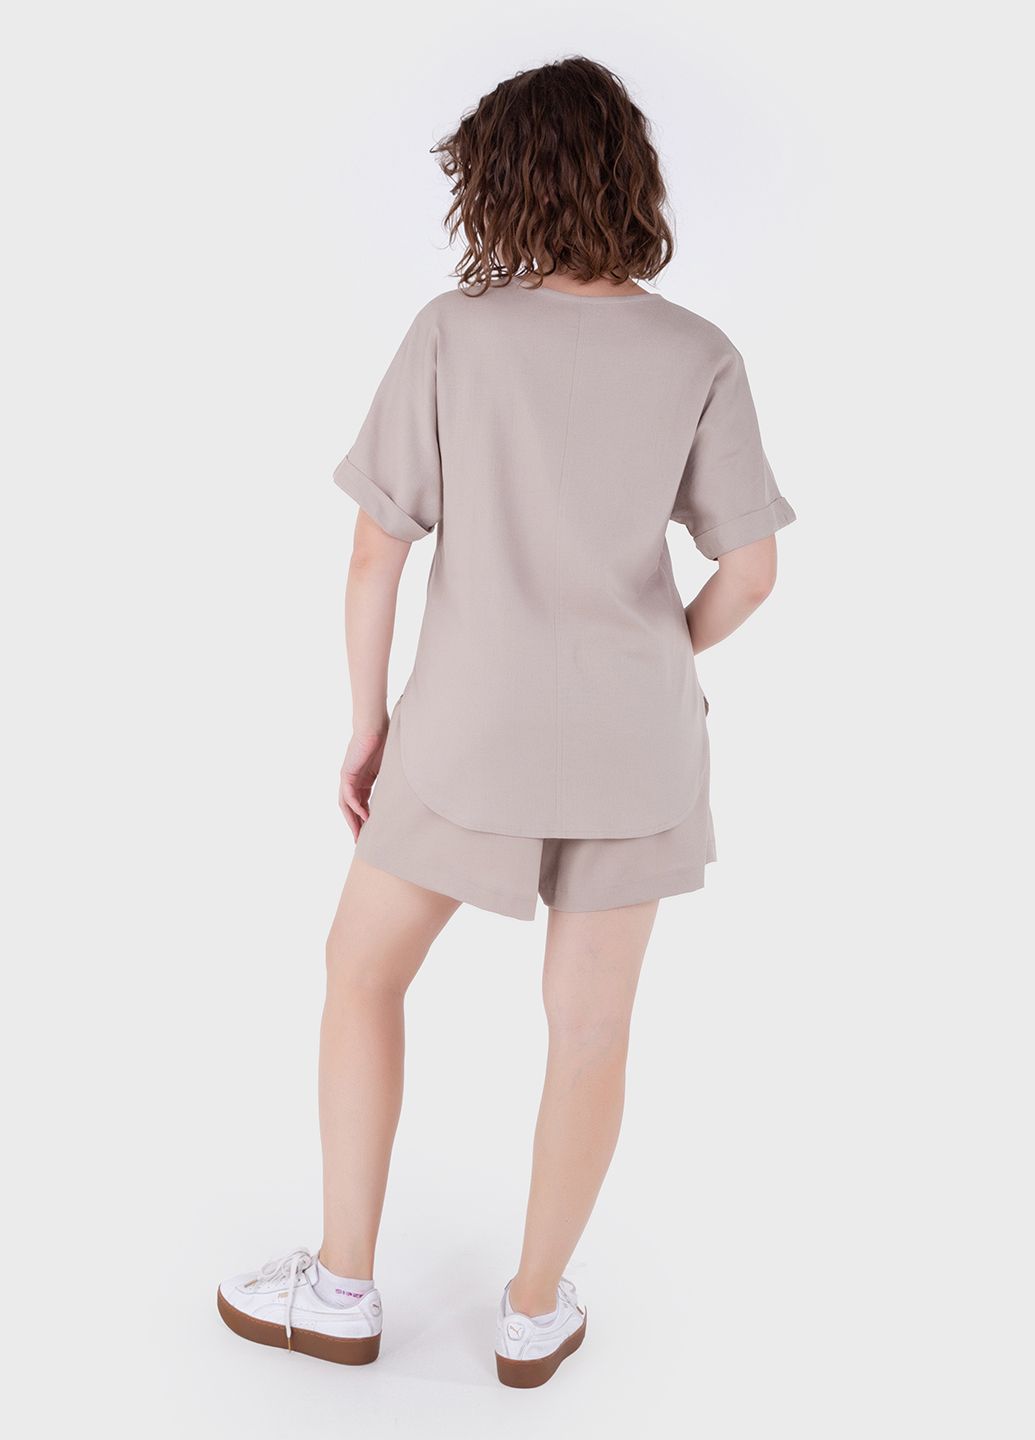 Купить Оверсайз льняная футболка женская бежевого цвета Merlini Лацио 800000036, размер 42-44 в интернет-магазине